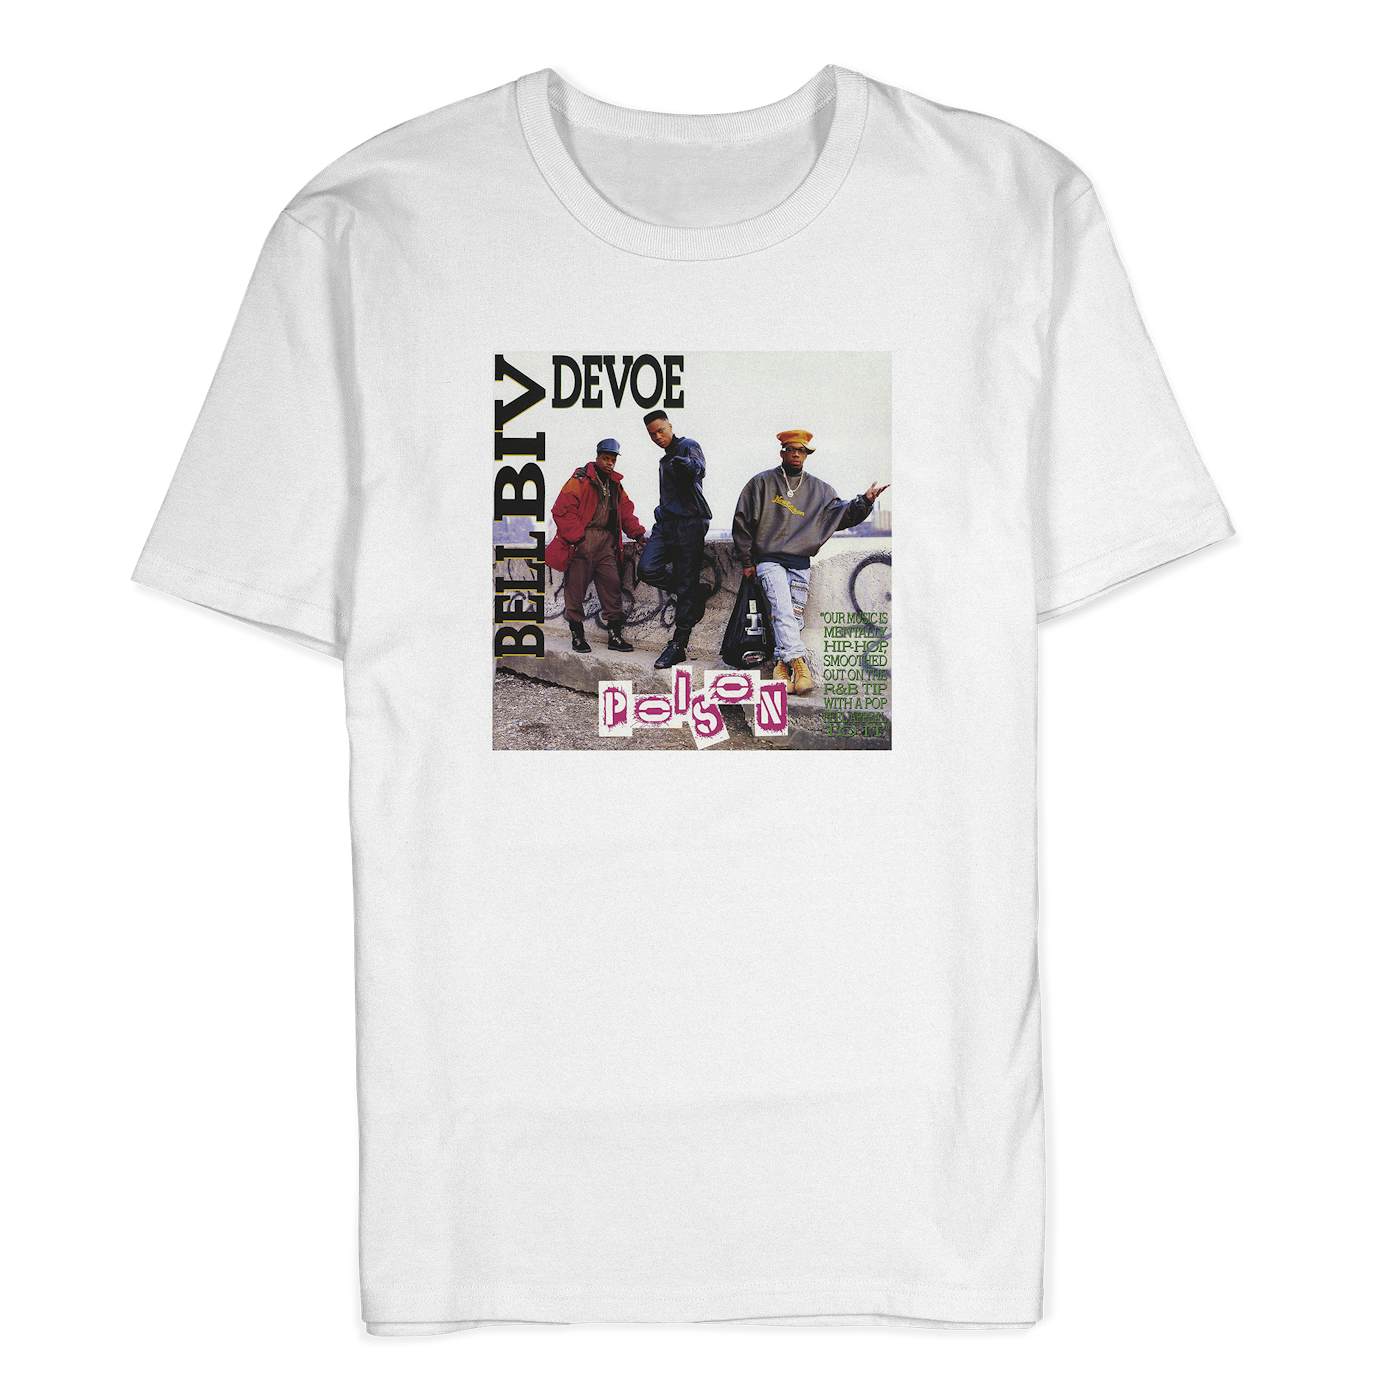 Bell Biv DeVoe "Poison Album Art" T-Shirt in White